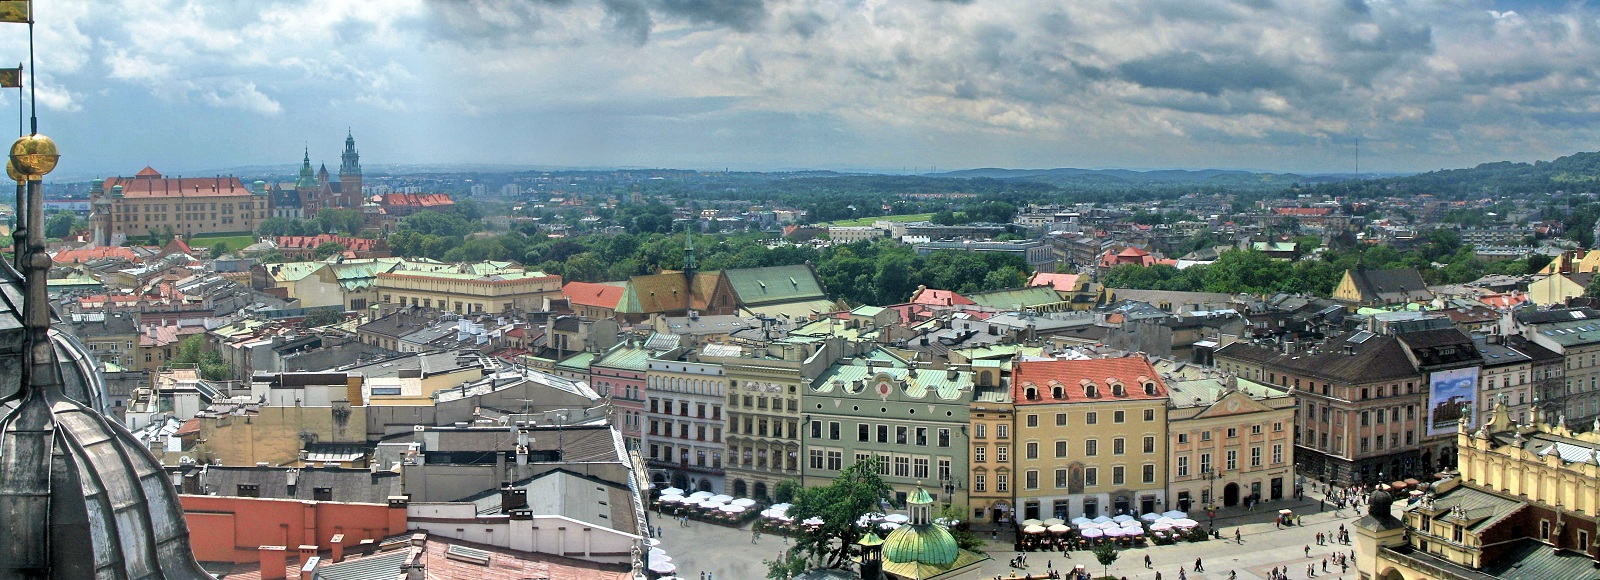 Ofertas de Traslados en Krakow. Traslados económicos en Krakow 